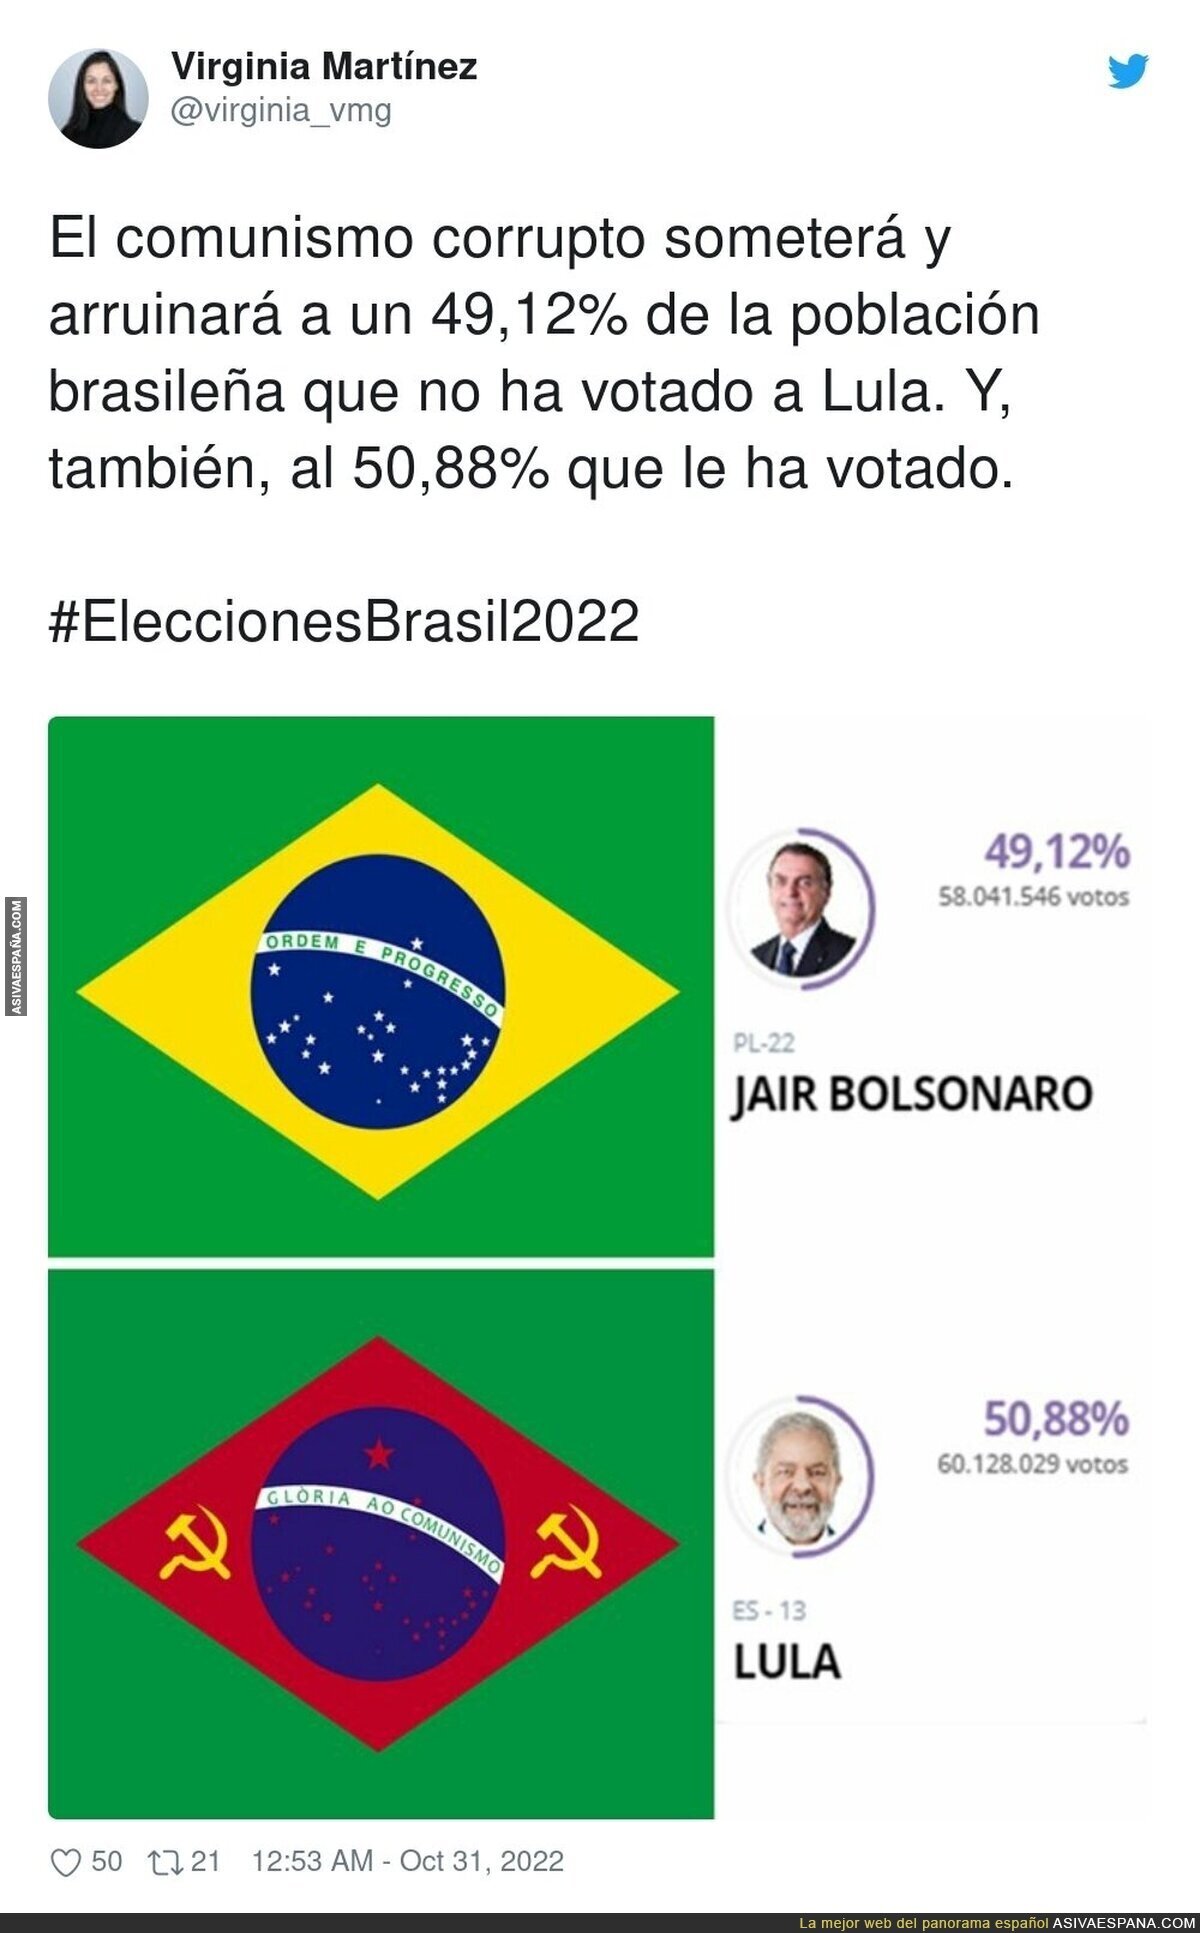 La derecha ya empieza su ataque a Lula